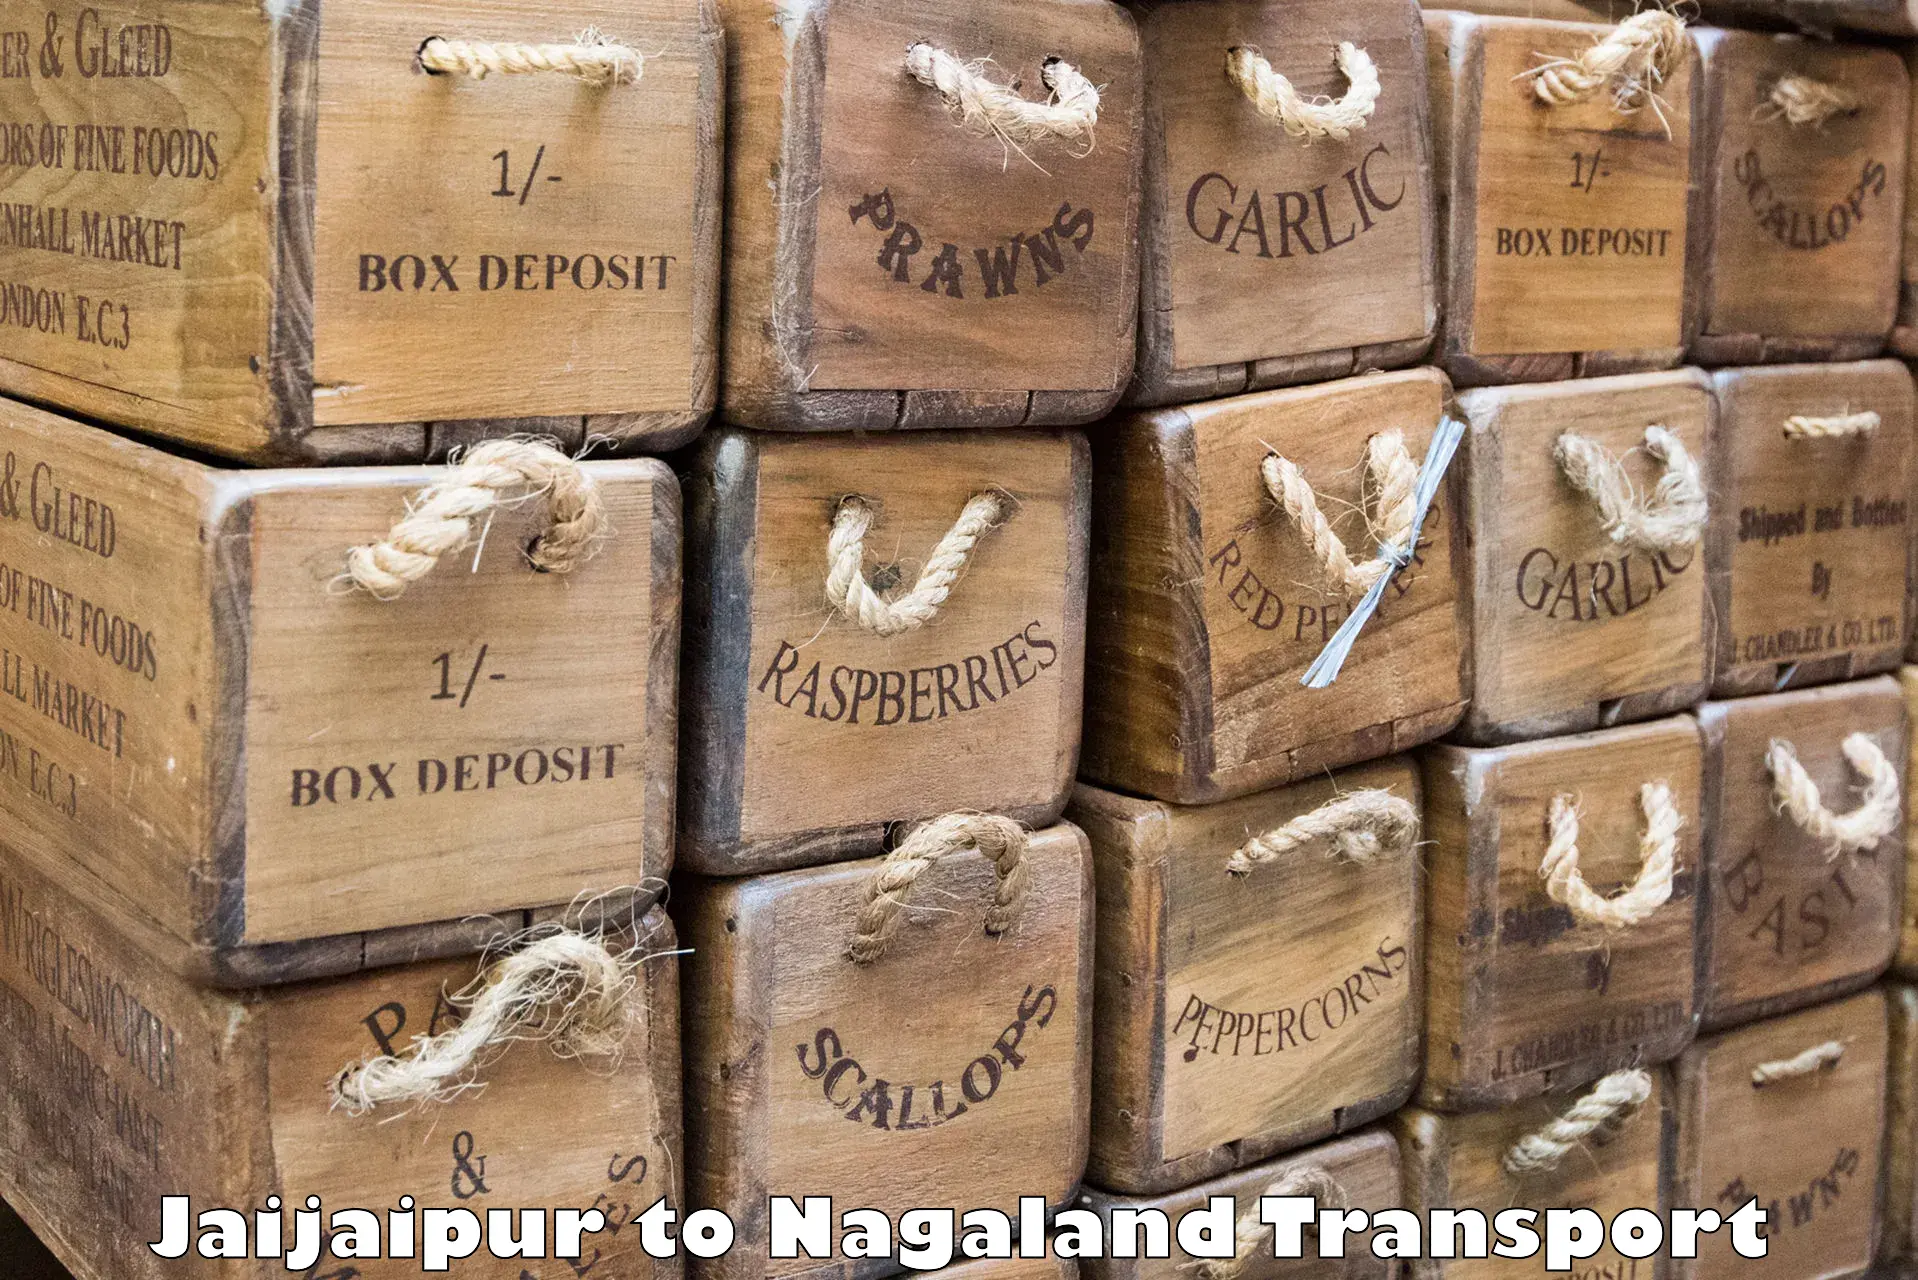 Container transport service Jaijaipur to Chumukedima